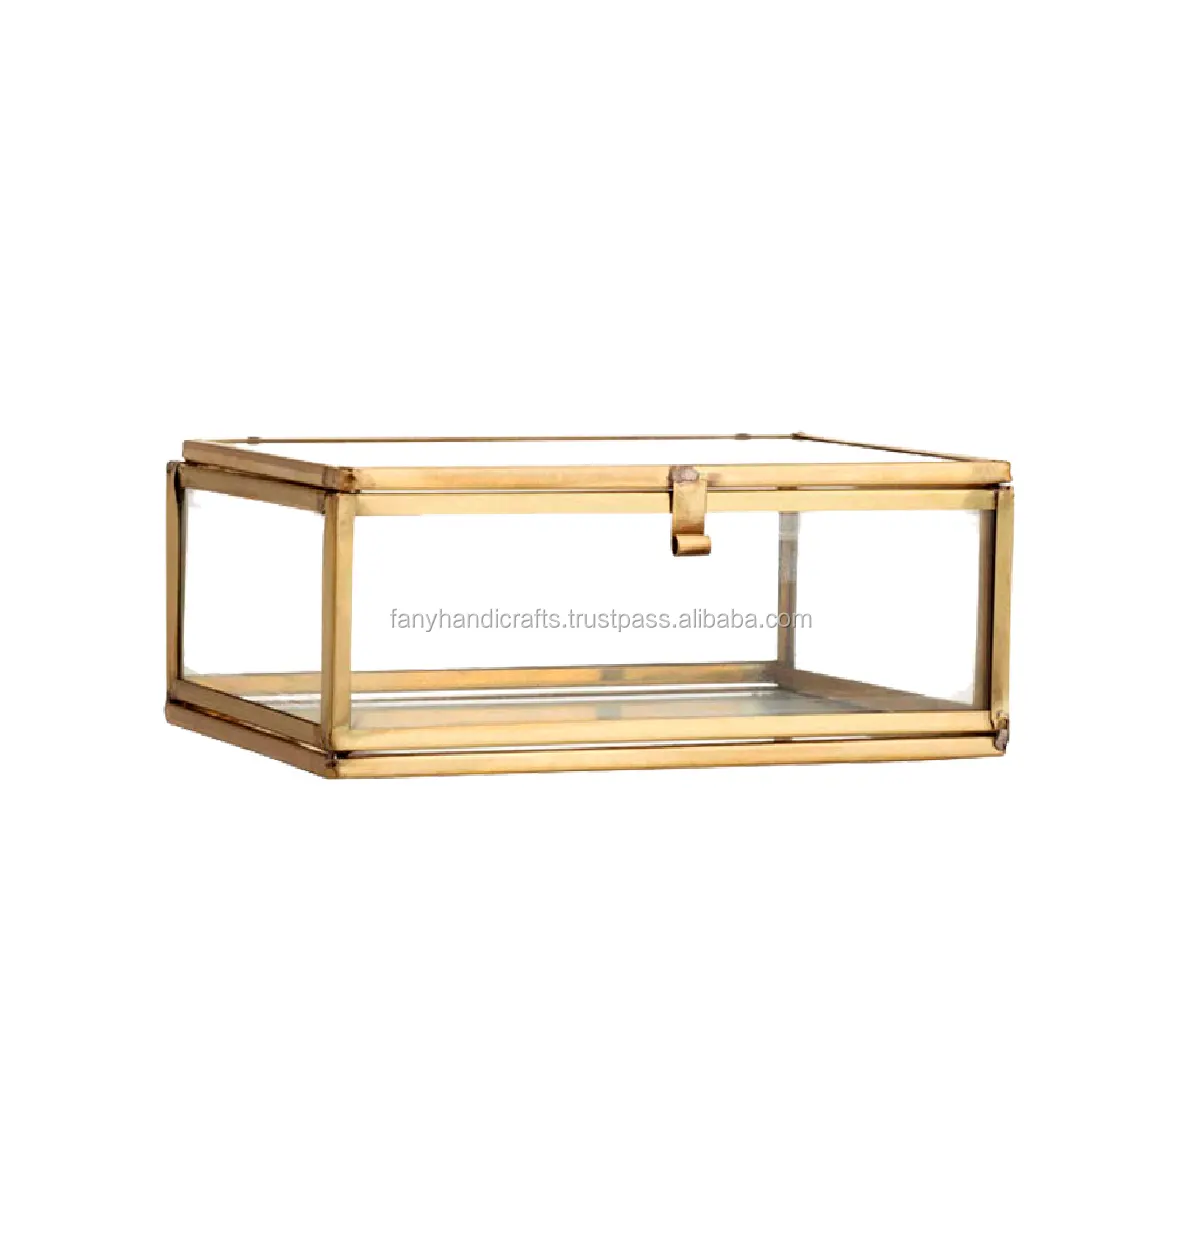 ヨーロッパアンティークガラスボックスジュエリースタンドホームデコレーション用化粧品収納ボックス